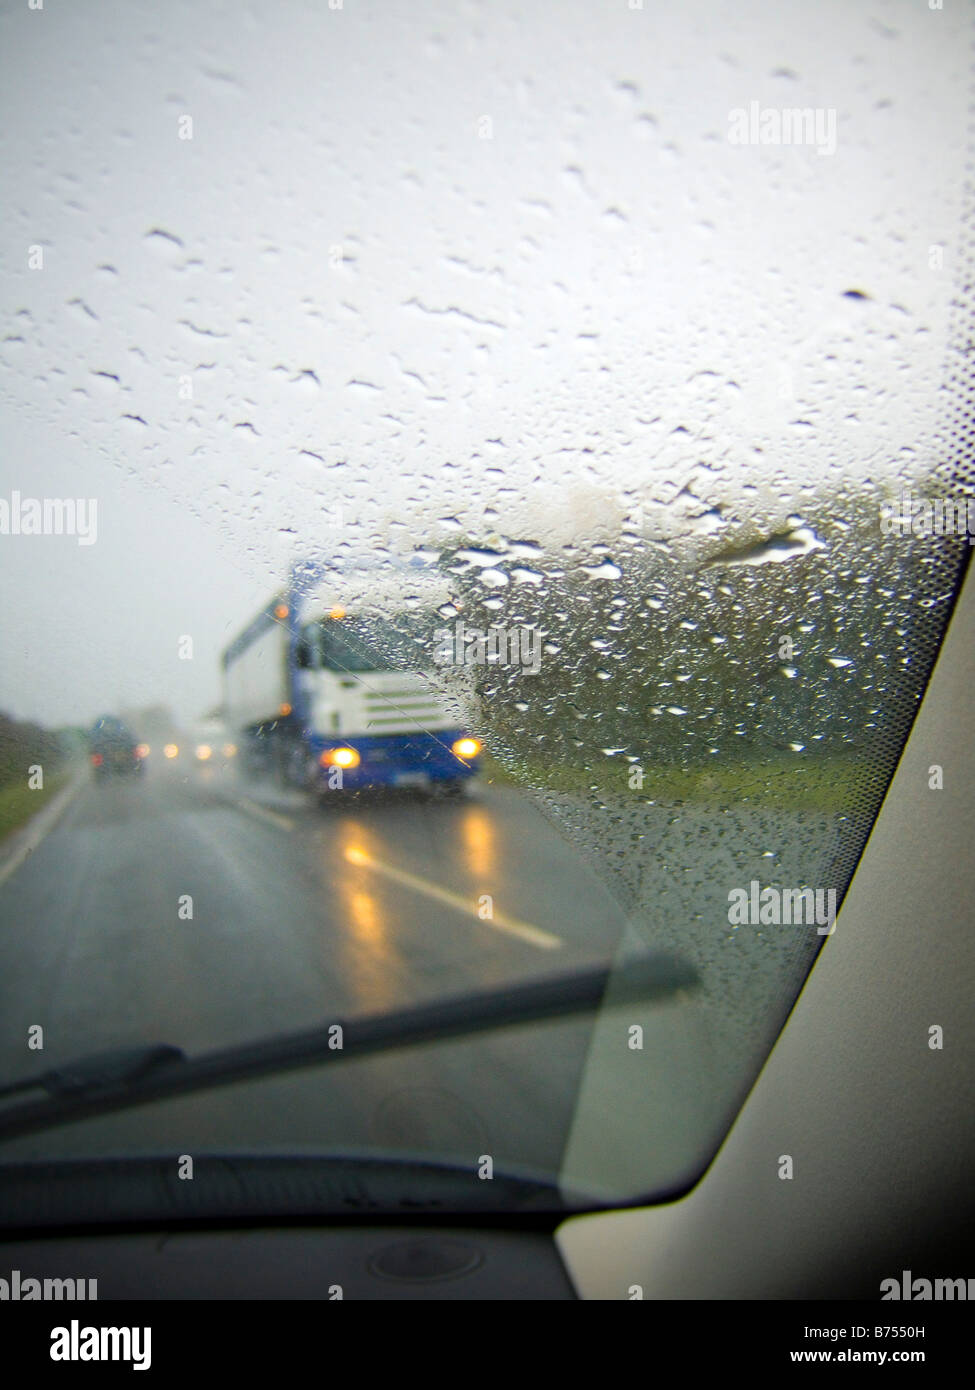 La guida su autostrada, durante tempo piovoso, oncomming veicoli Foto Stock